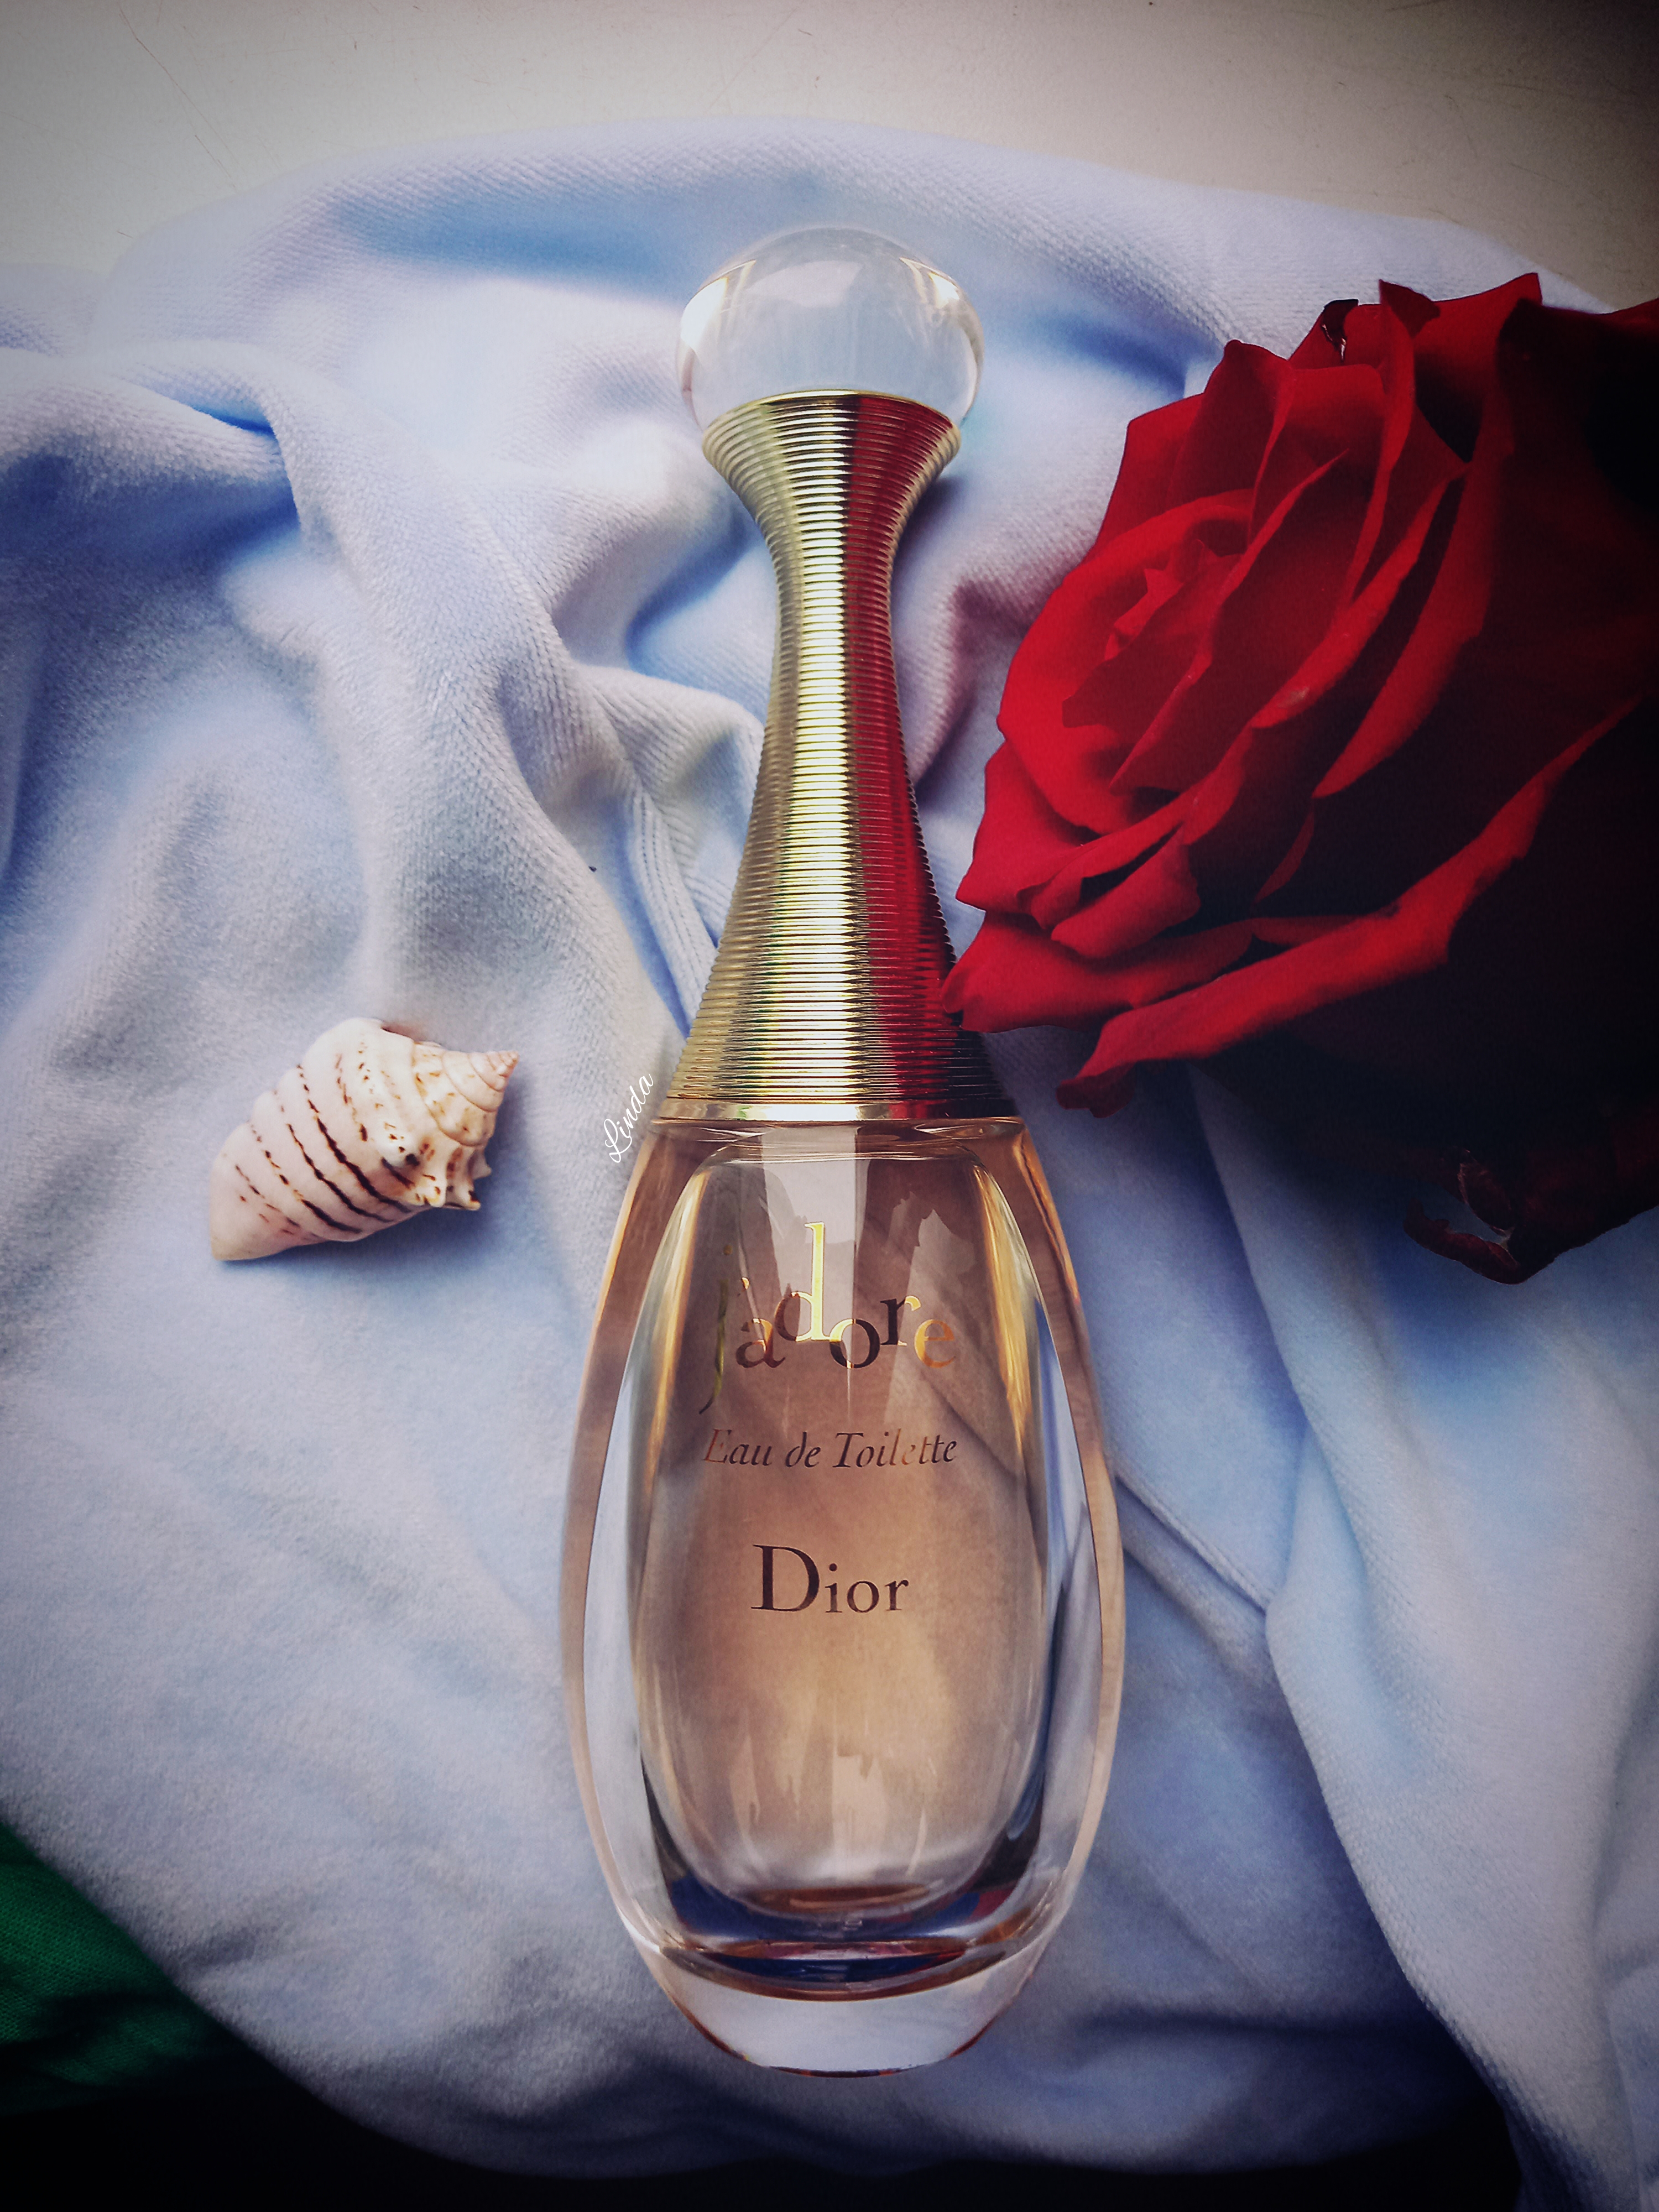 J'adore Dior ♡